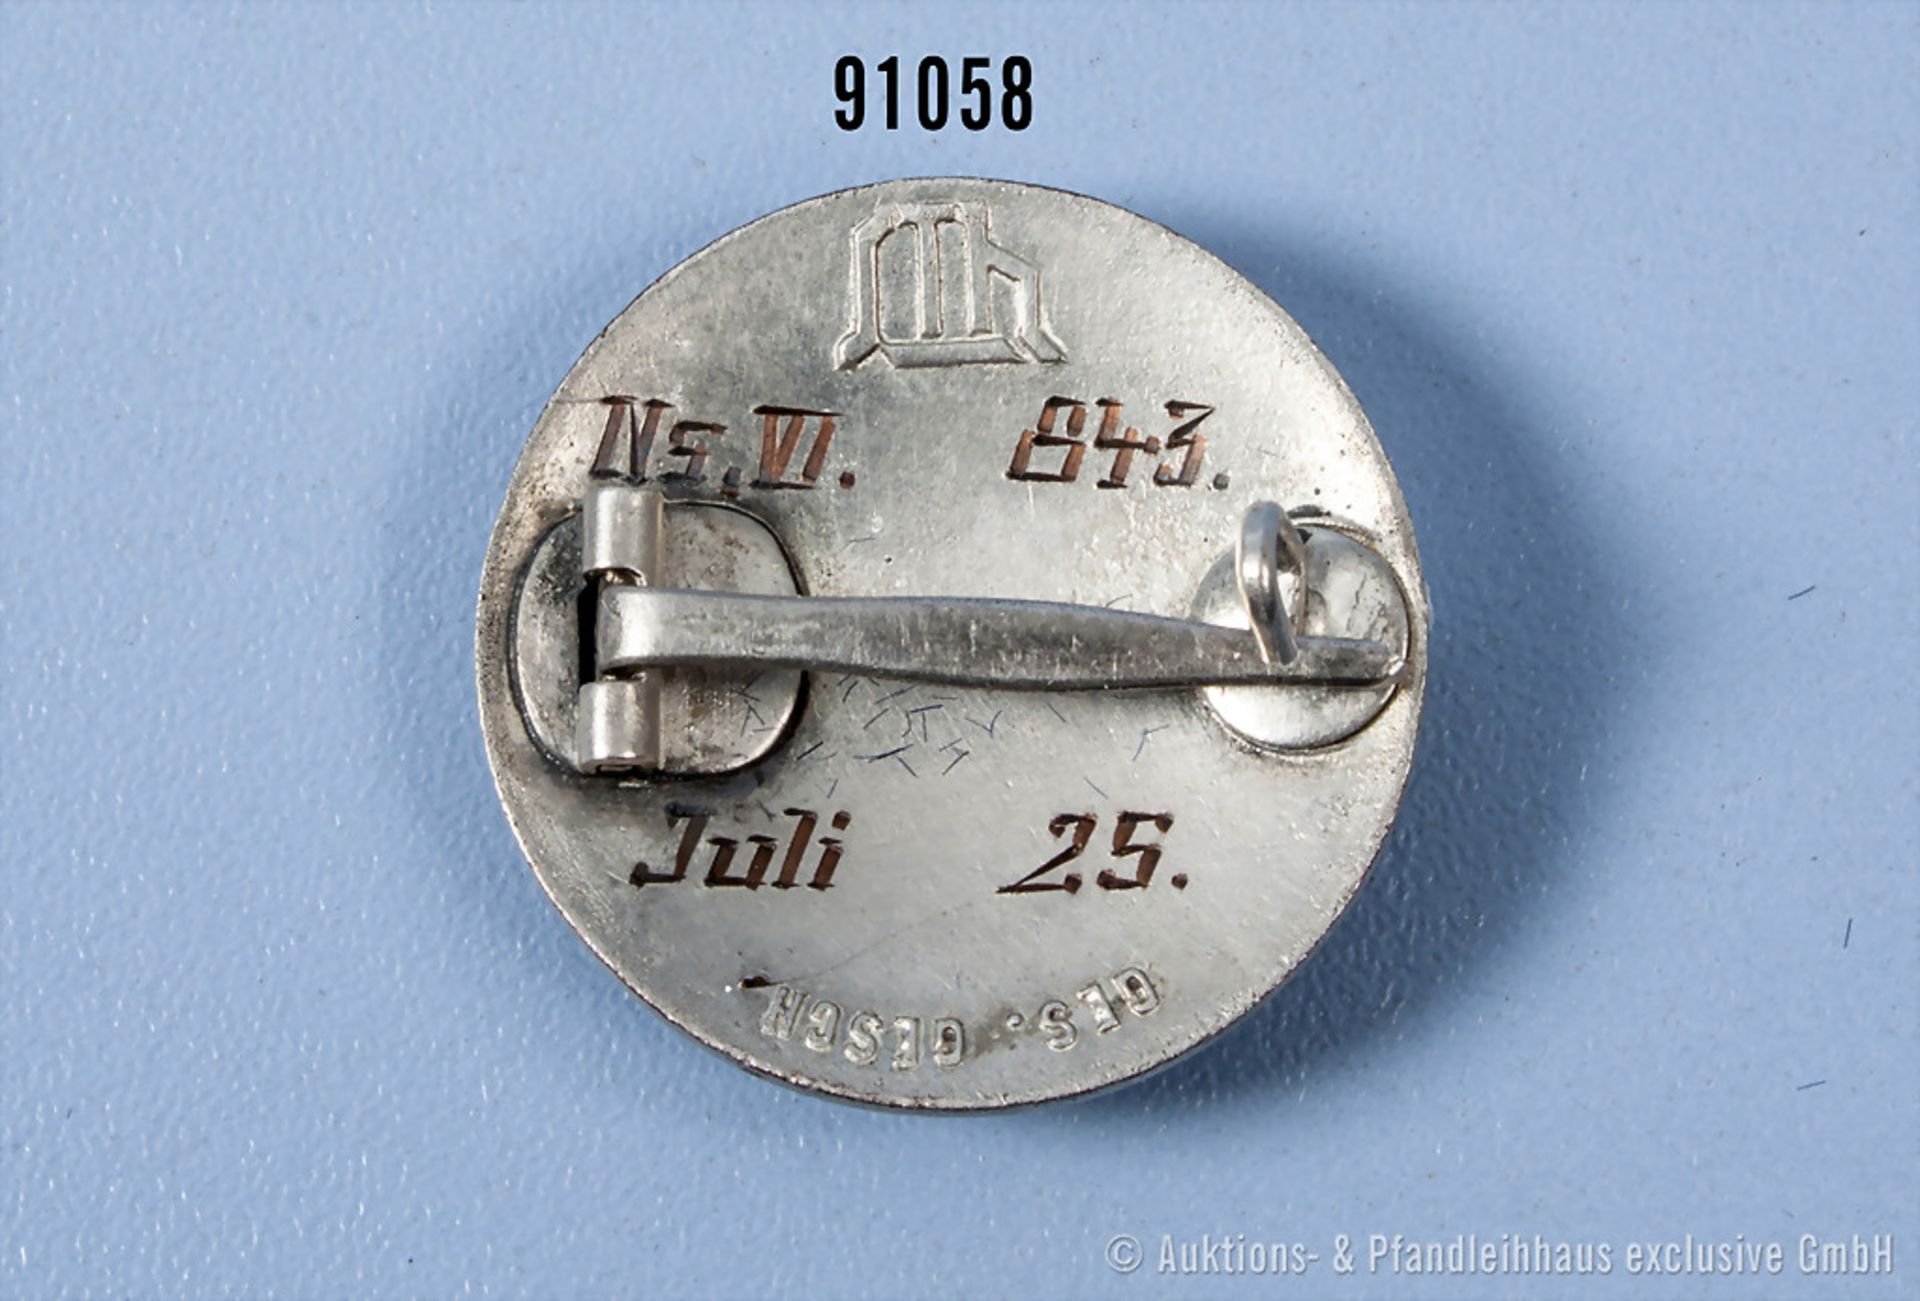 Stahlhelmbund Eintrittsabzeichen 1925, rückseitig Hersteller "STh" und "GES. GESCH."... - Bild 2 aus 2